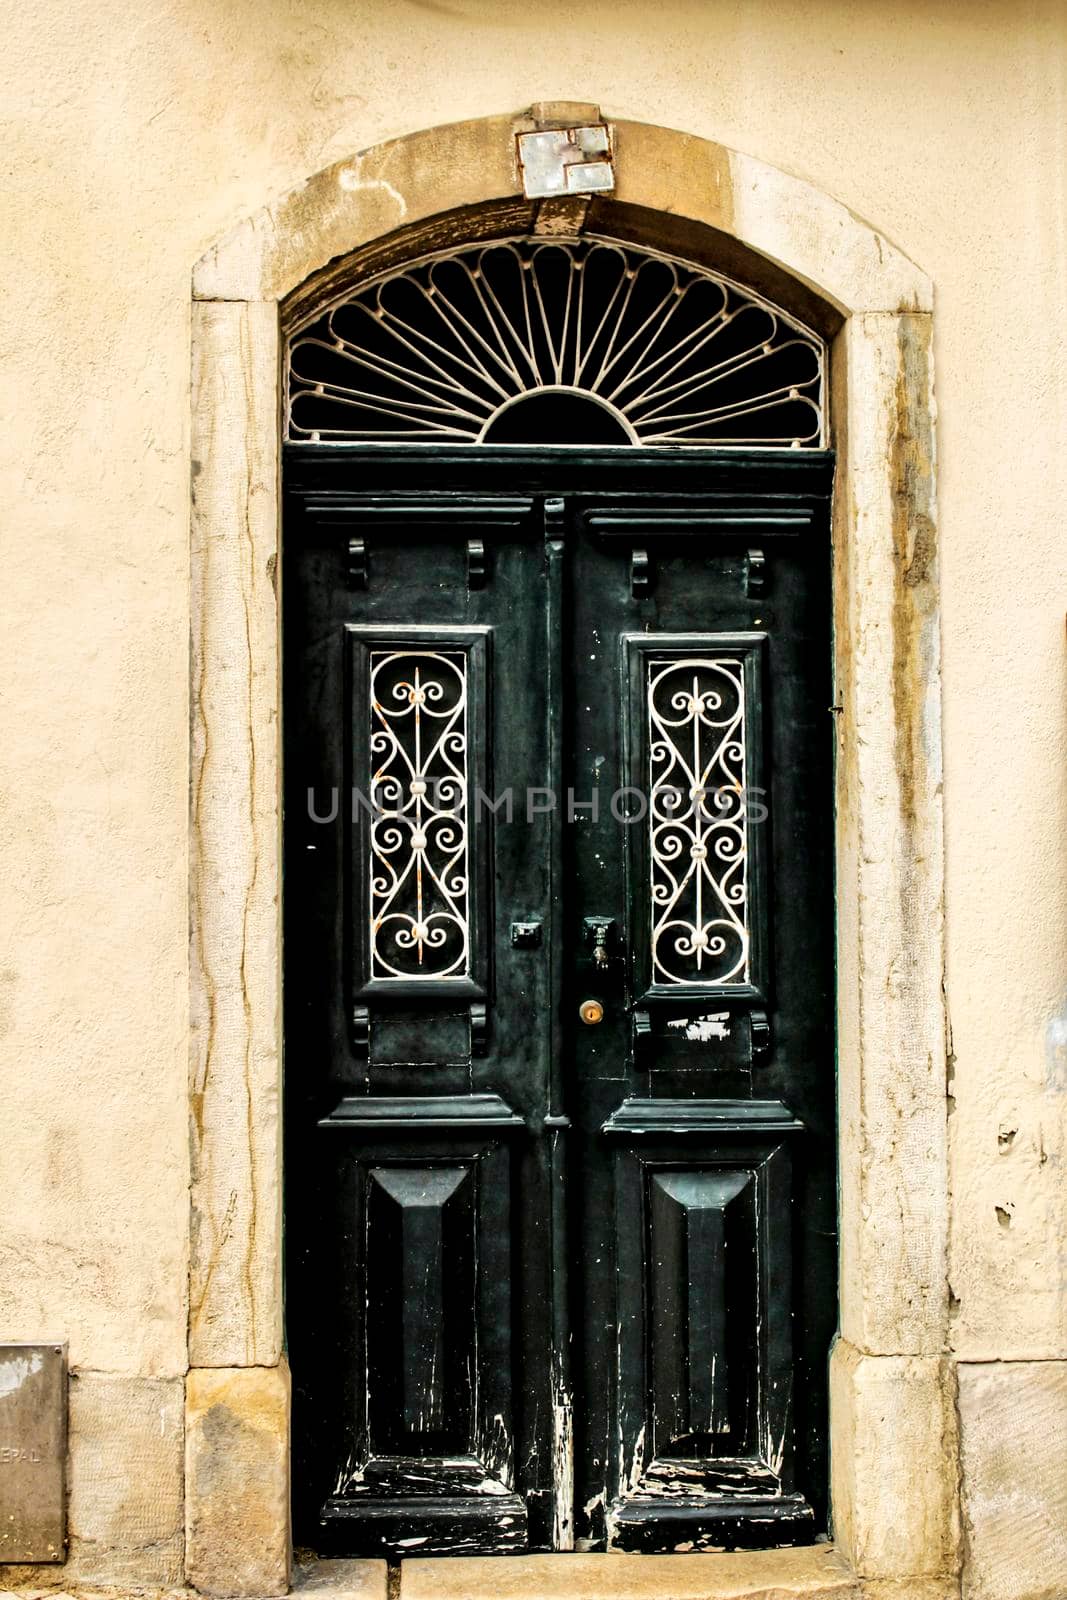 Old wooden door with tiled facade in Lisbon. Wrought metal details on the door.